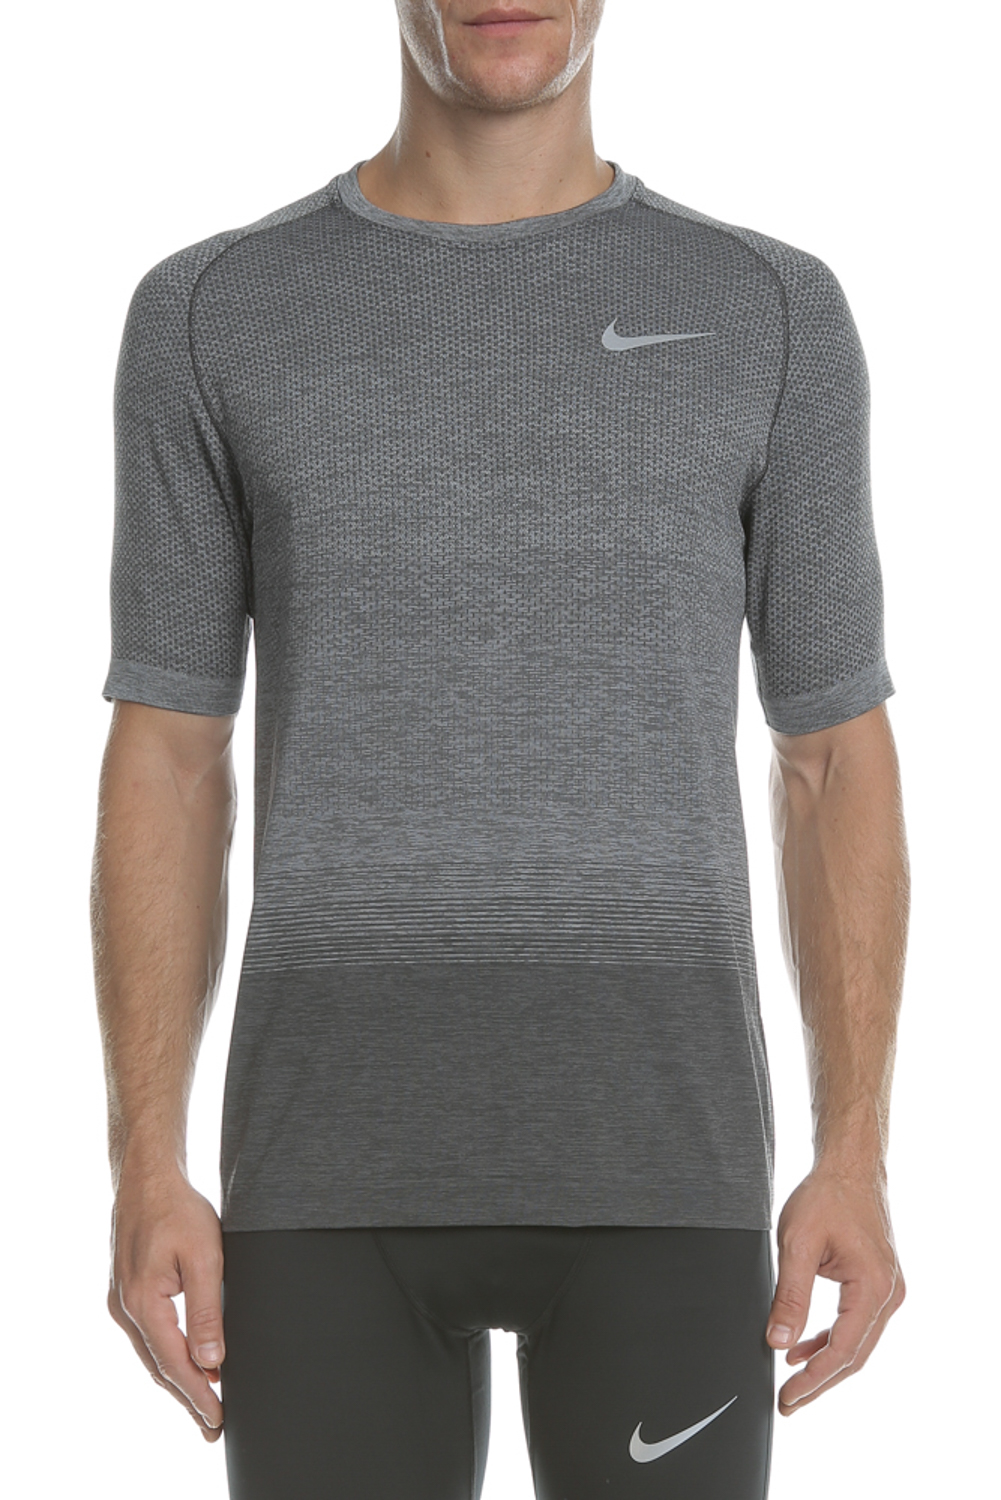 Ανδρικά/Ρούχα/Αθλητικά/T-shirt NIKE - Ανδρική κοντομάνικη μπλούζα NIKE DRI-FIT KNIT σκούρο γκρι